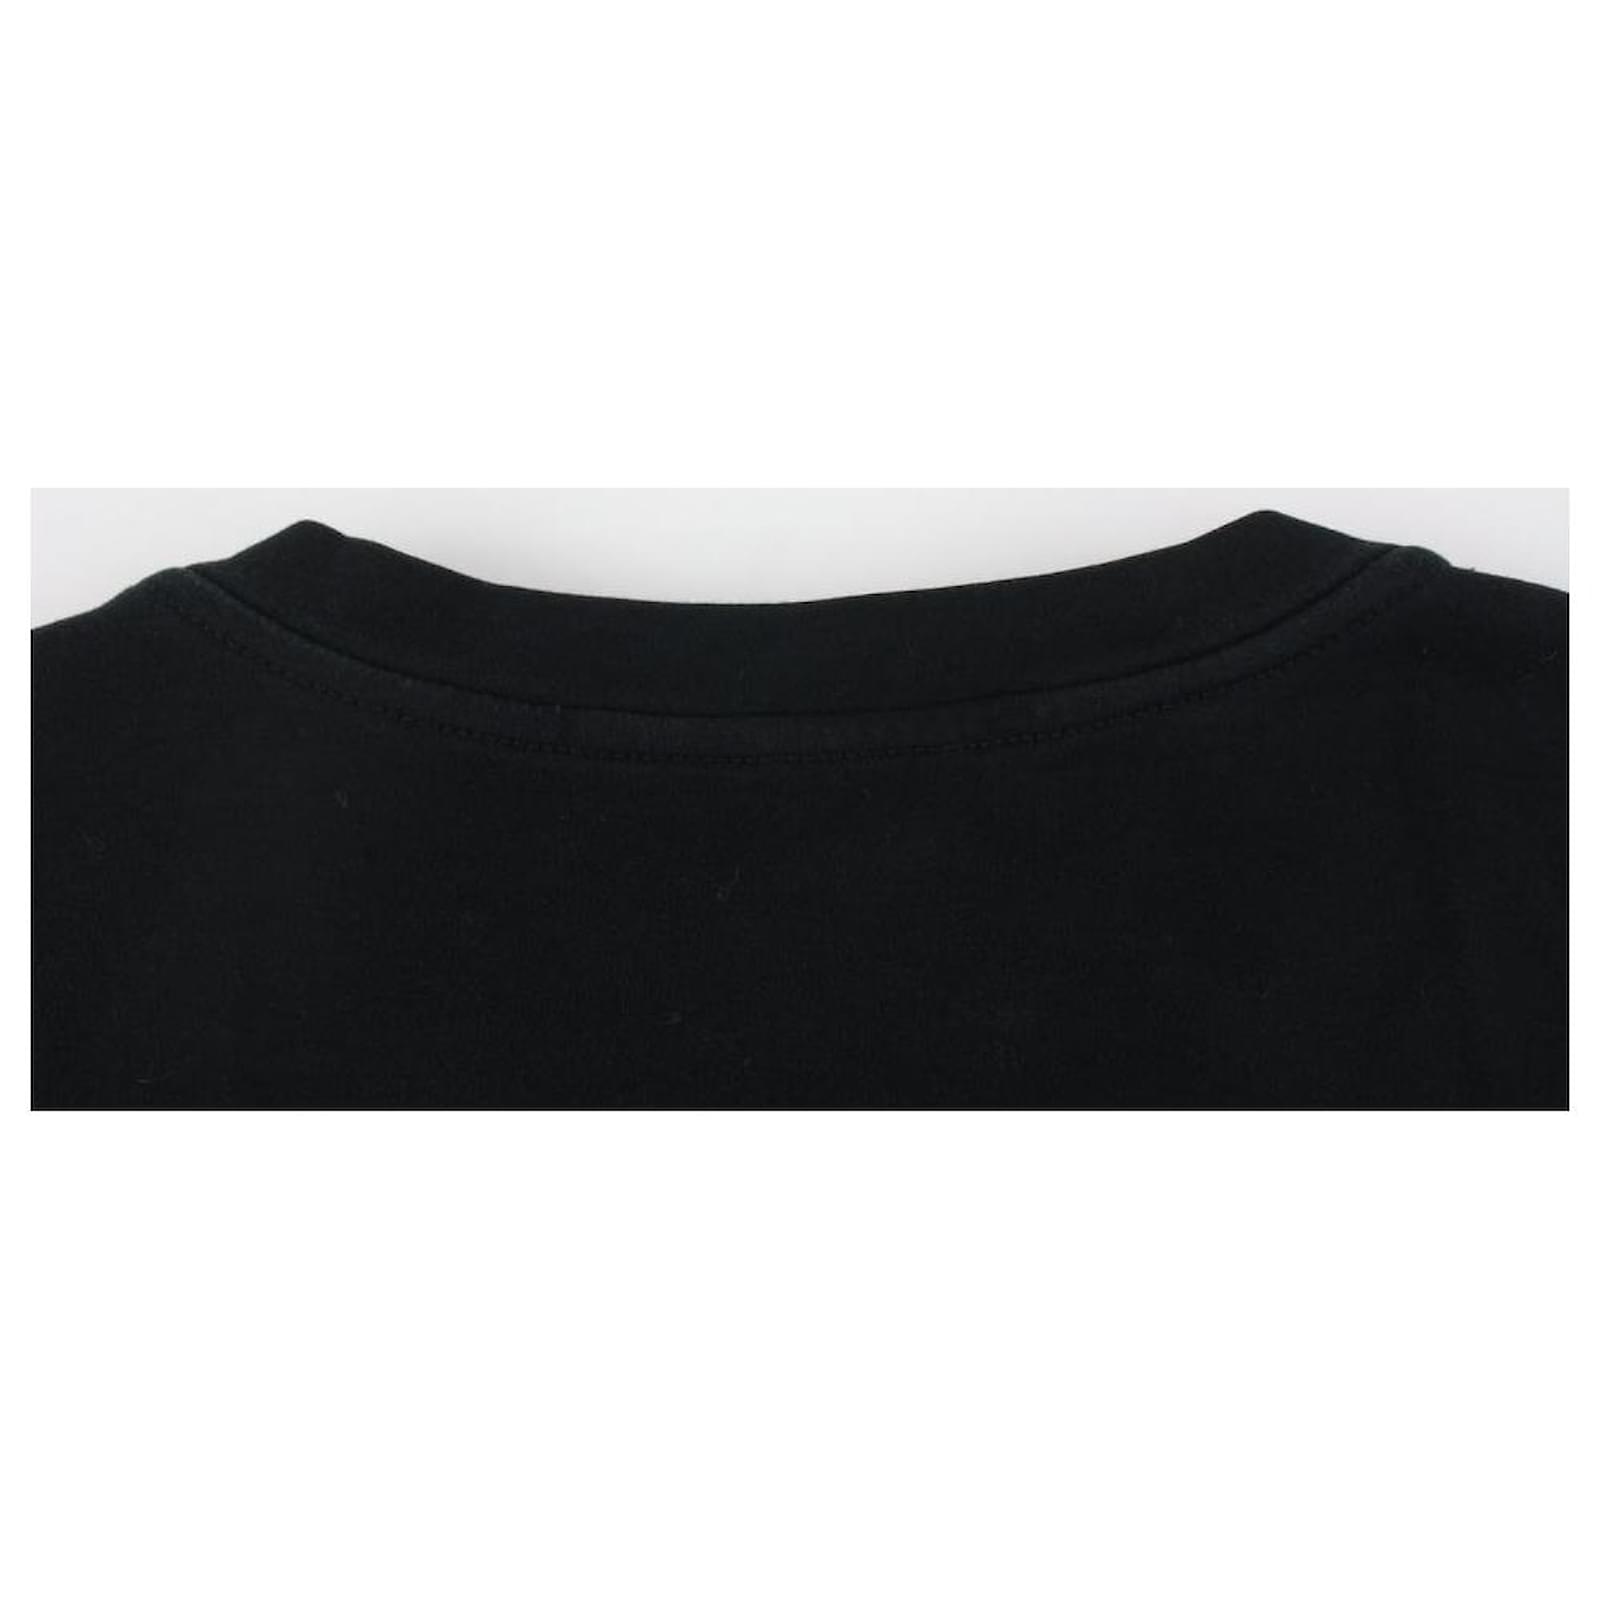 Louis Vuitton Men's Large Black x Red Volez Voguez Voyagez T-Shirt Tee  1116lv35